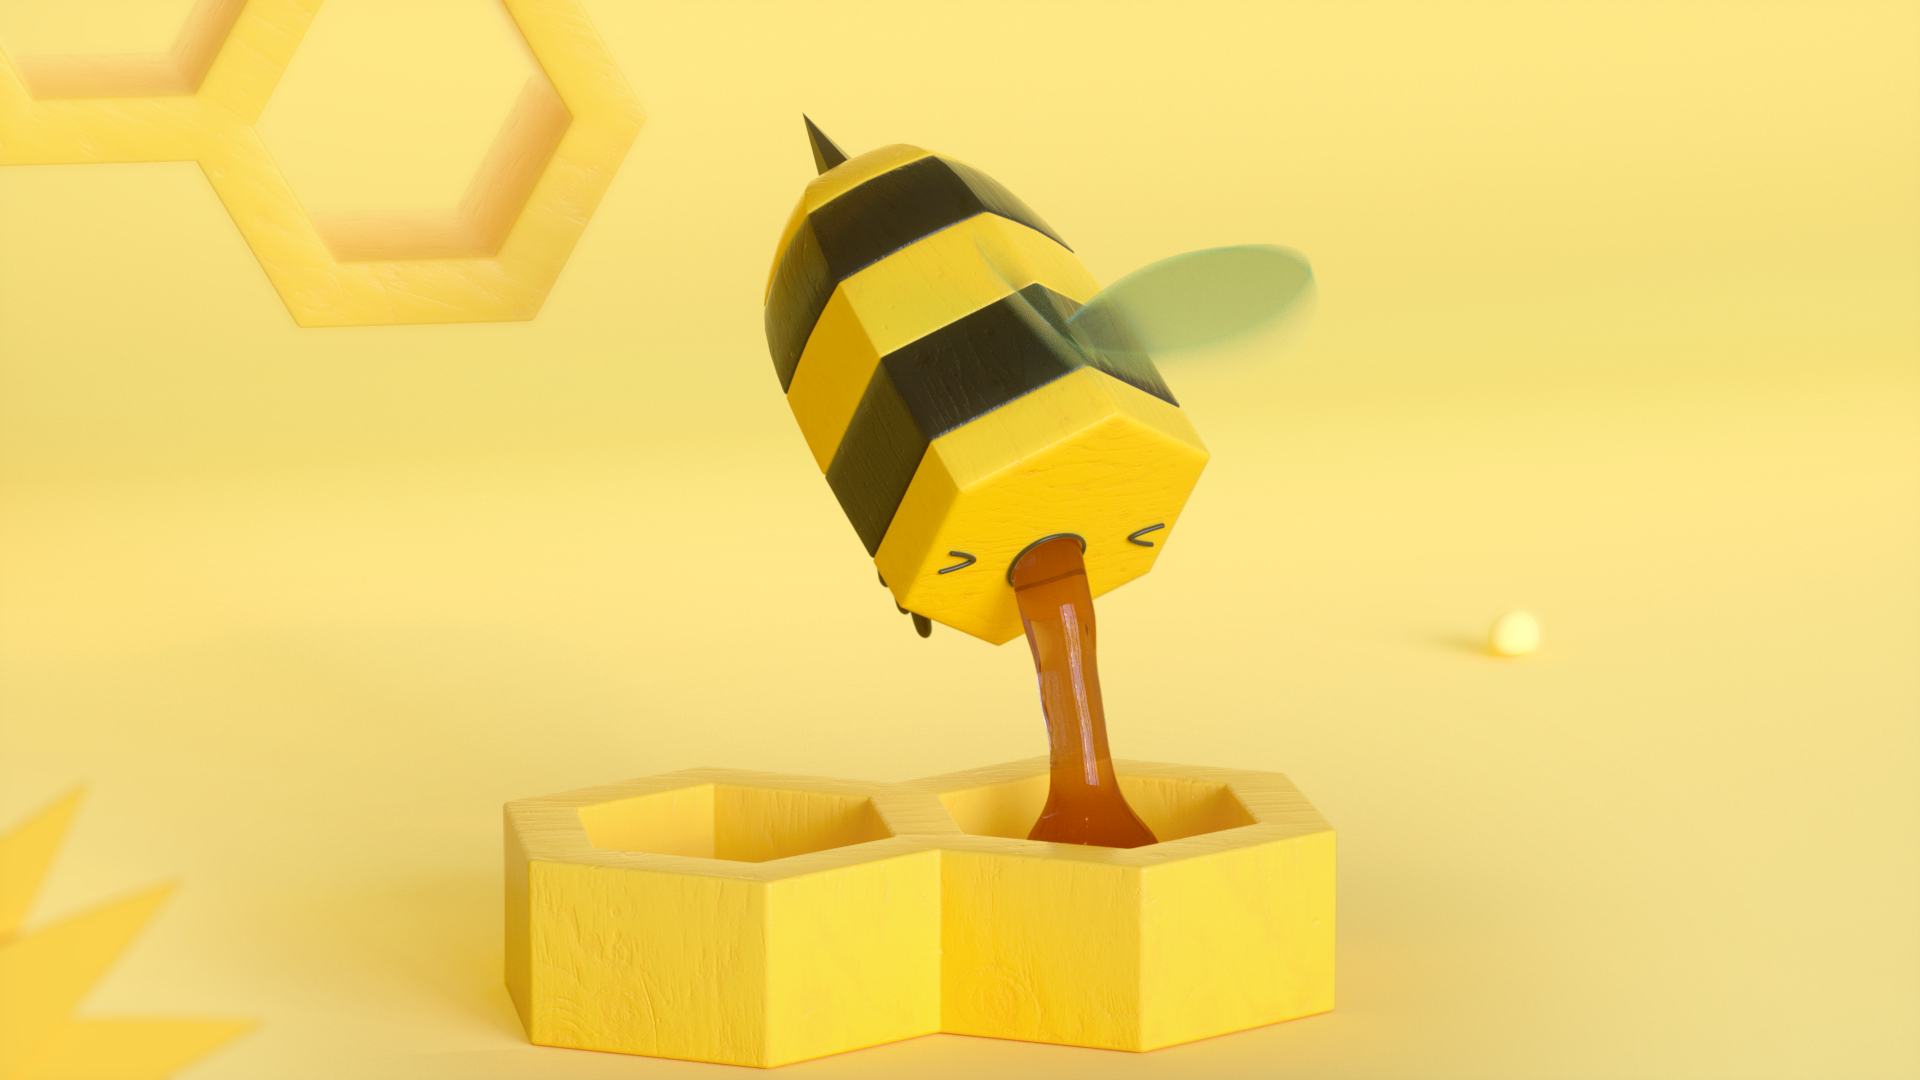 Bees animated short by Ricard Badia Animade | STASH MAGAZINE